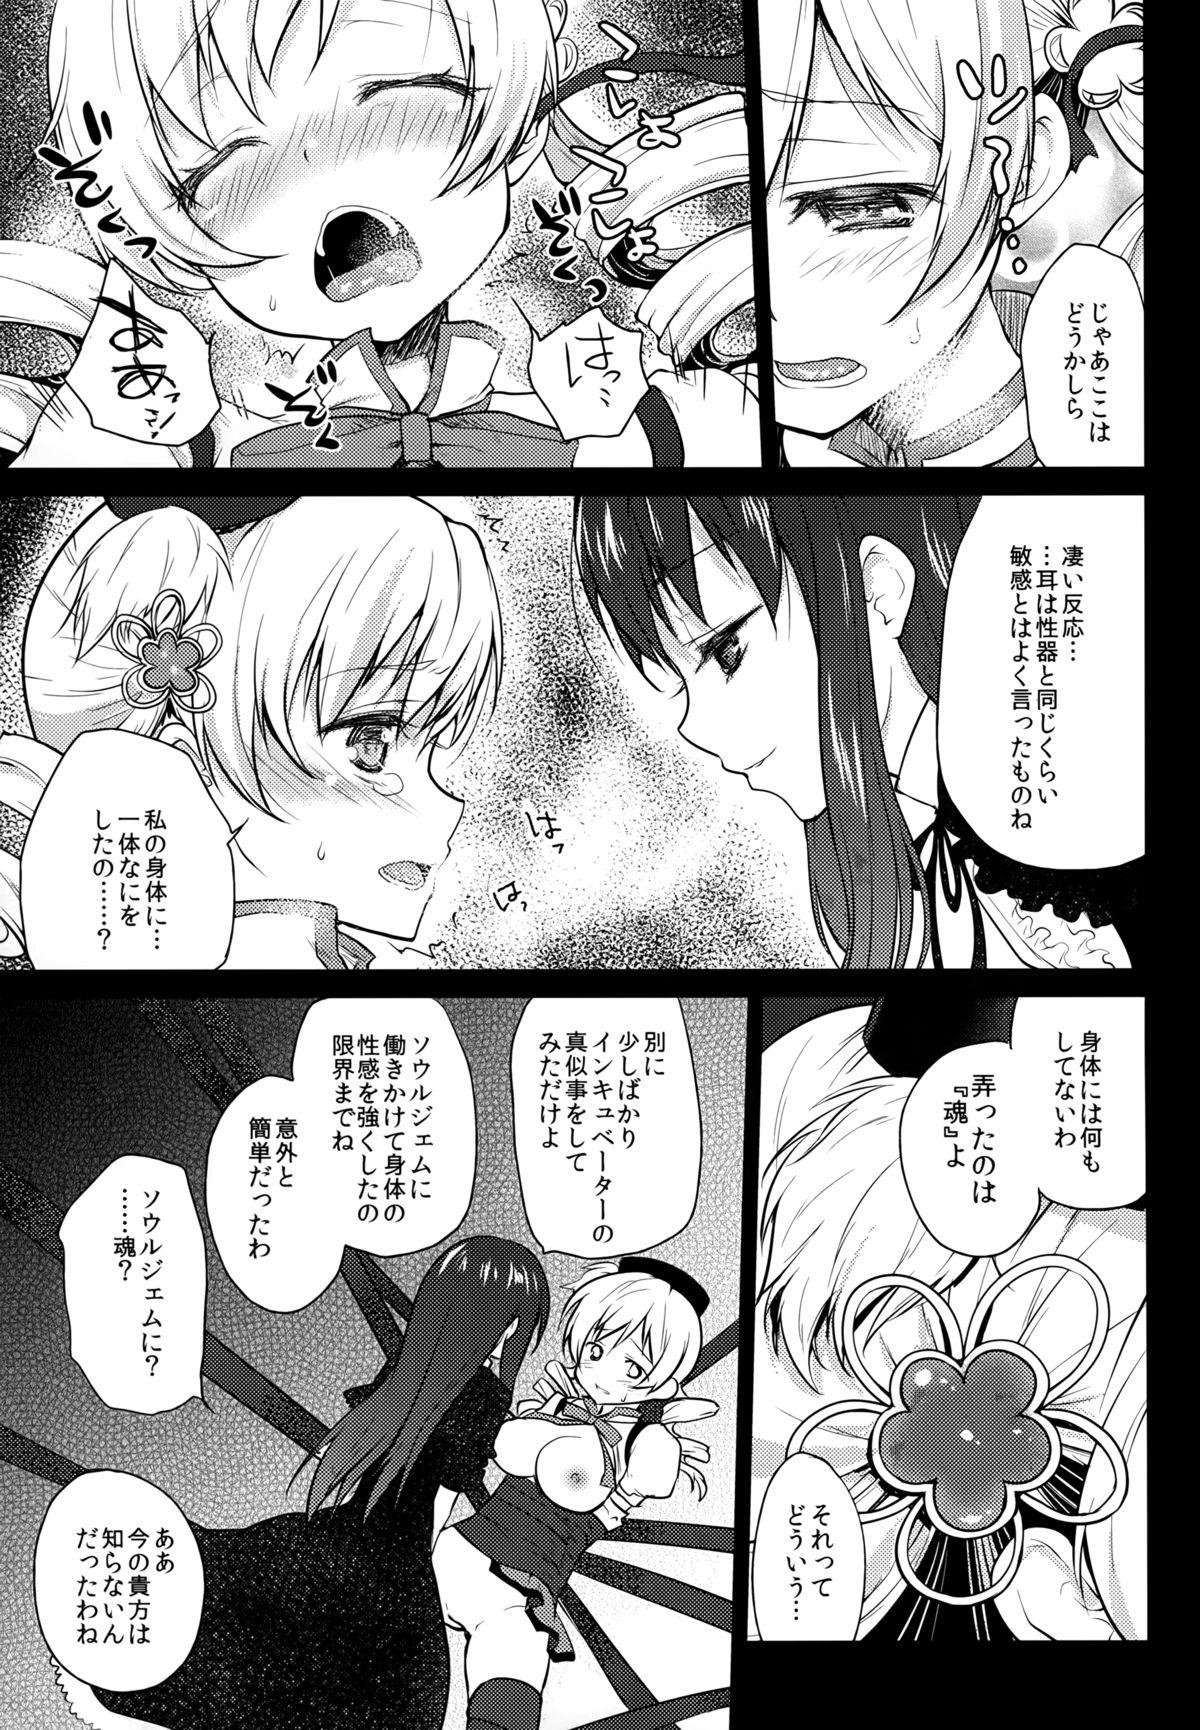 Spoon Hitoribocchi wa Sabishii Mono ne - Puella magi madoka magica Women Sucking - Page 11